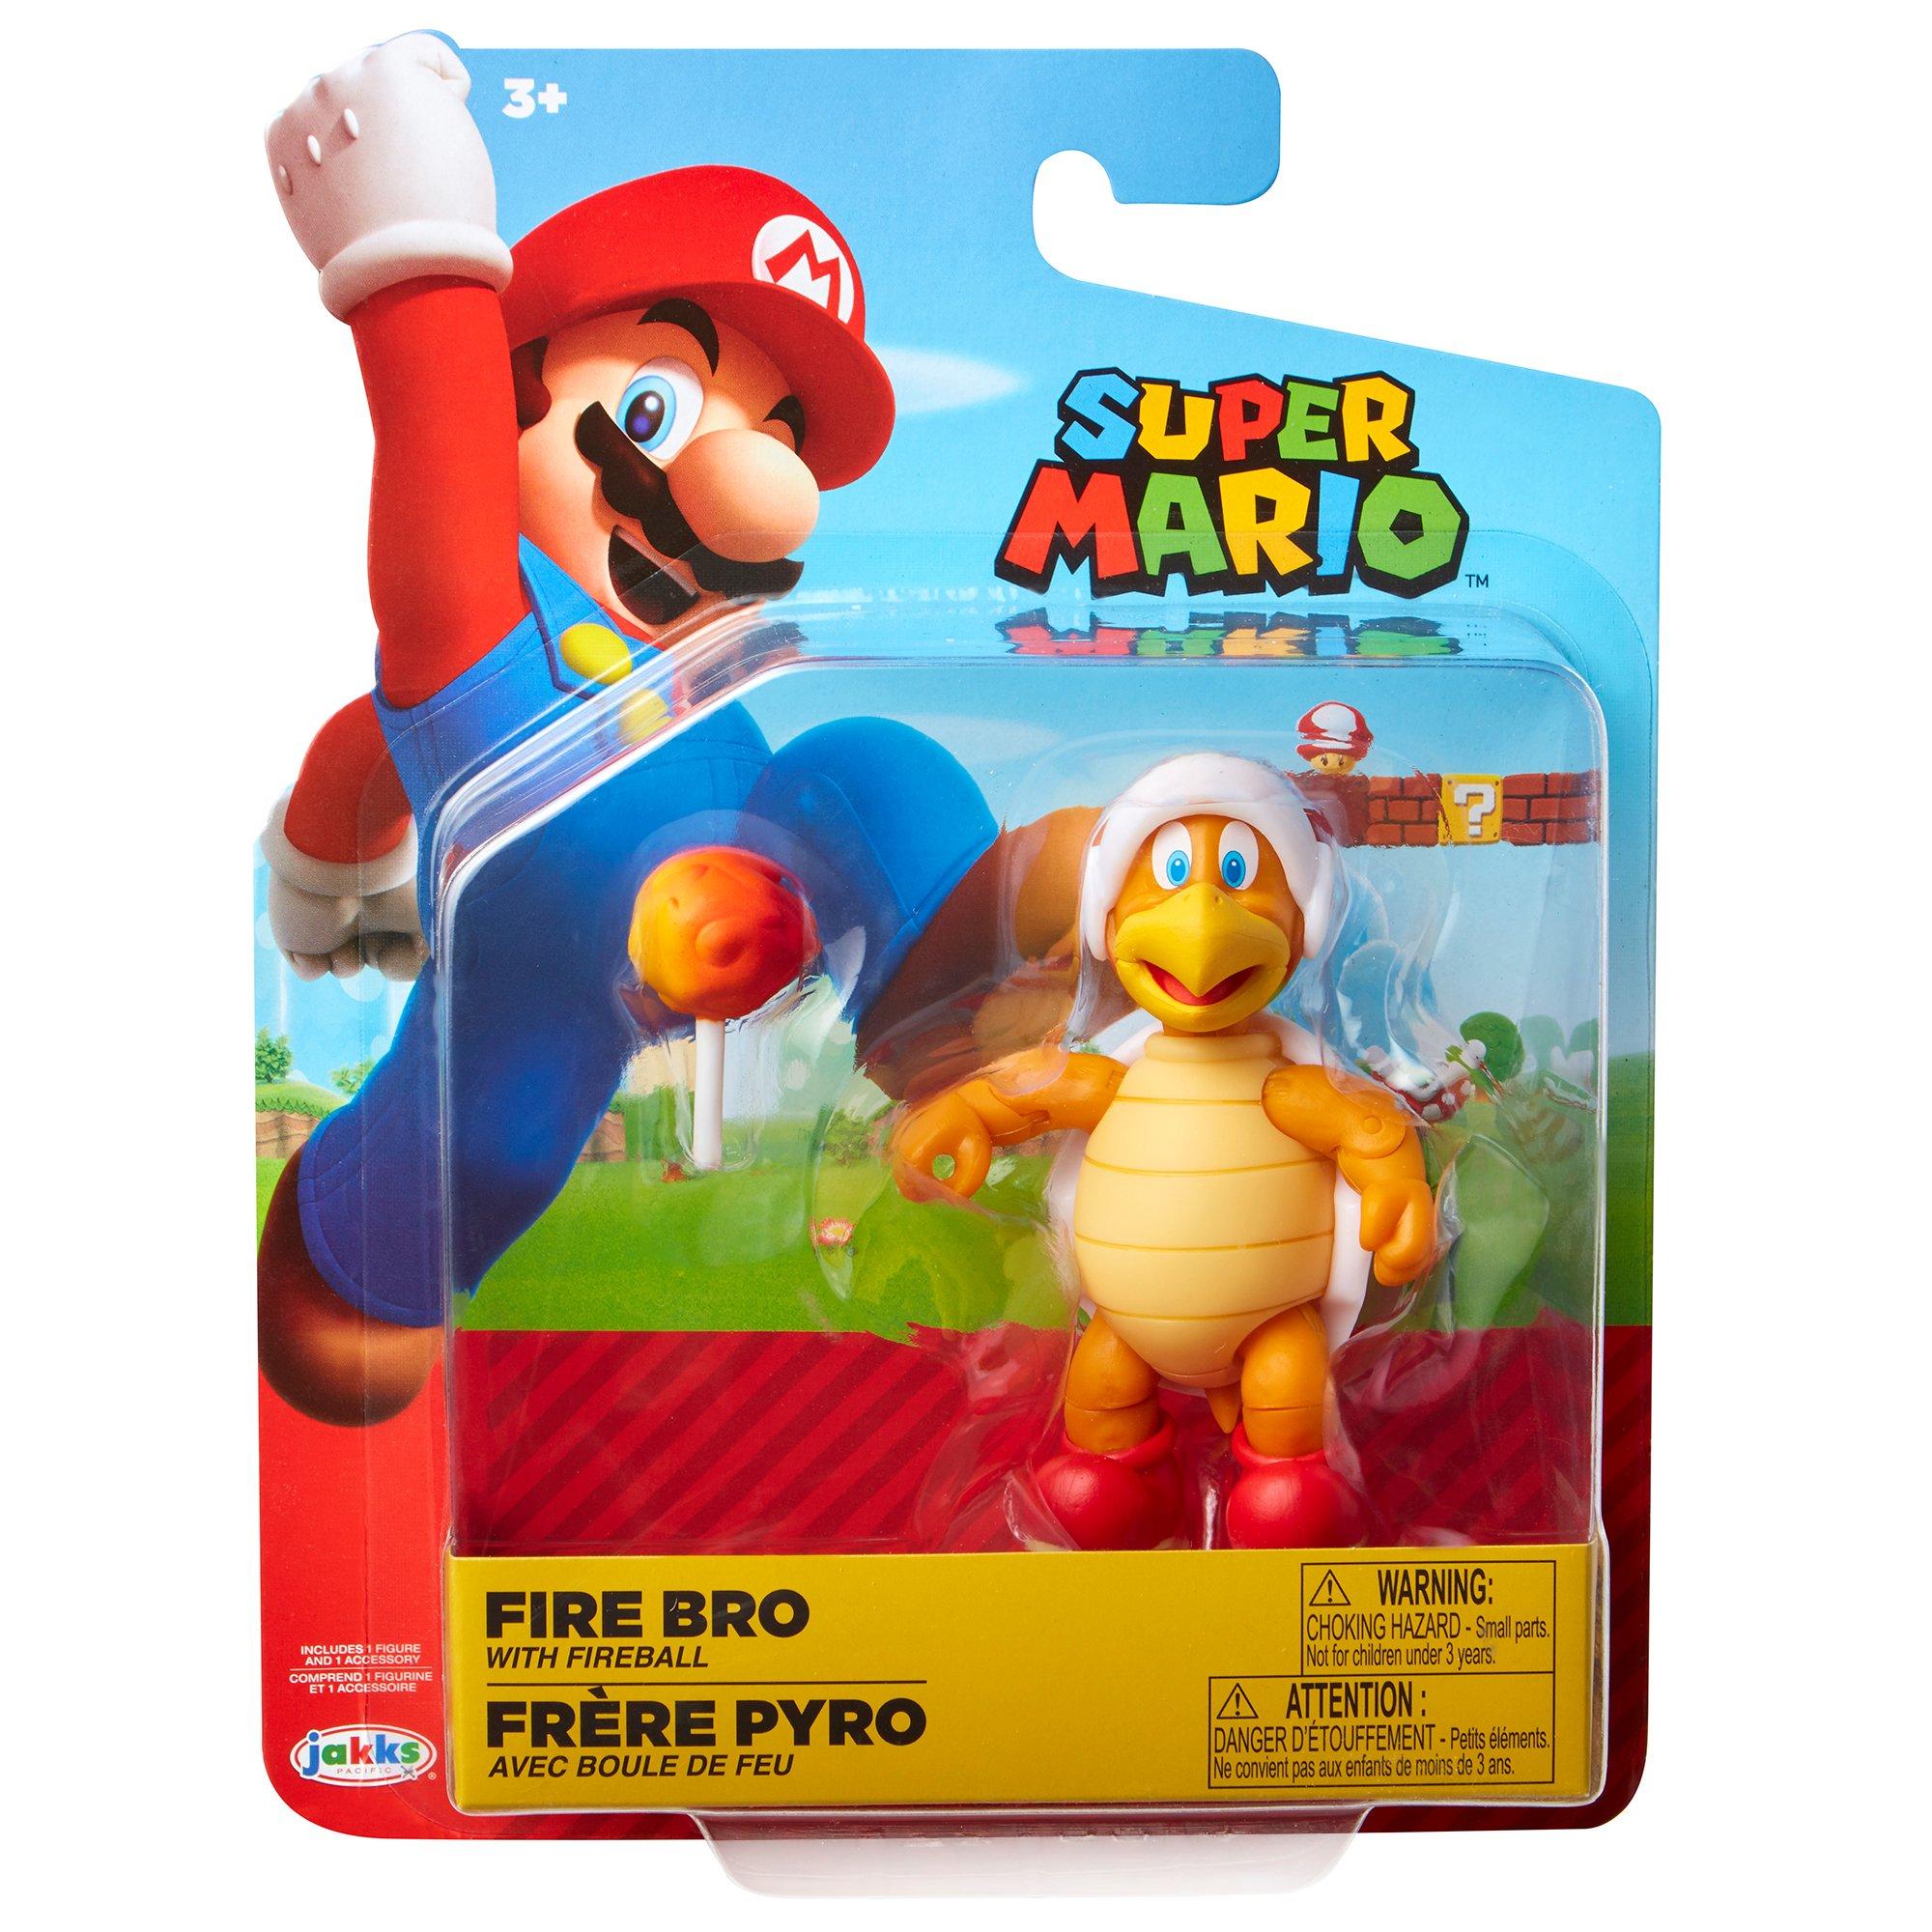 Super Mario Bros. Fire Bro with 